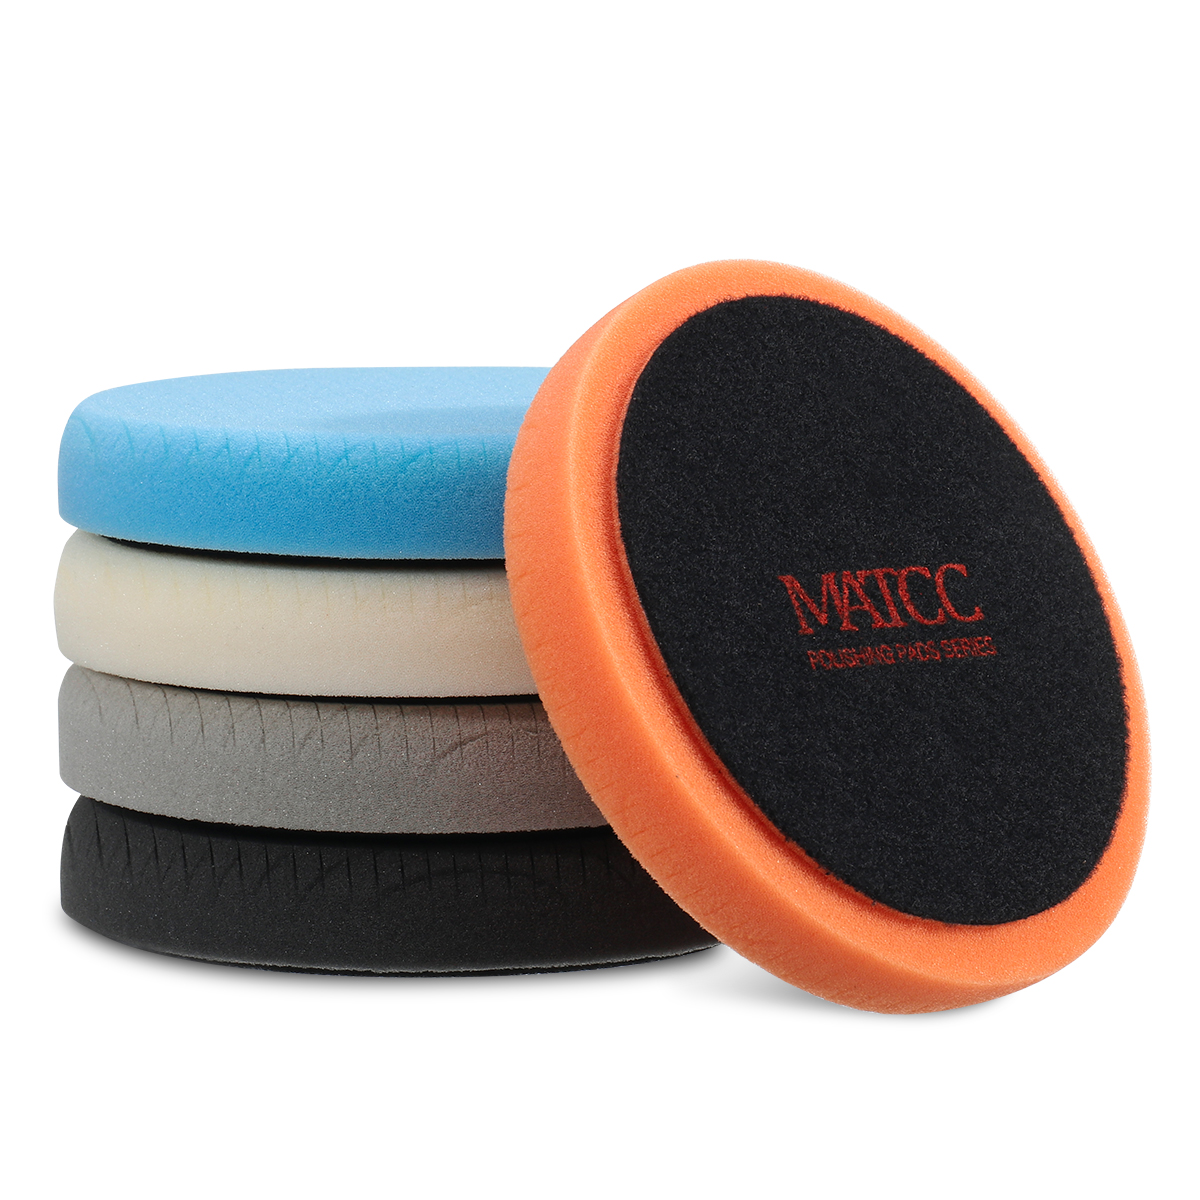 MATCC 5 Pcs 6 Inch Polishing Buffer Wool and Wheel Polishing Pad Woolen Polishing Waxing Pads Kits with M14 Drill Adapter